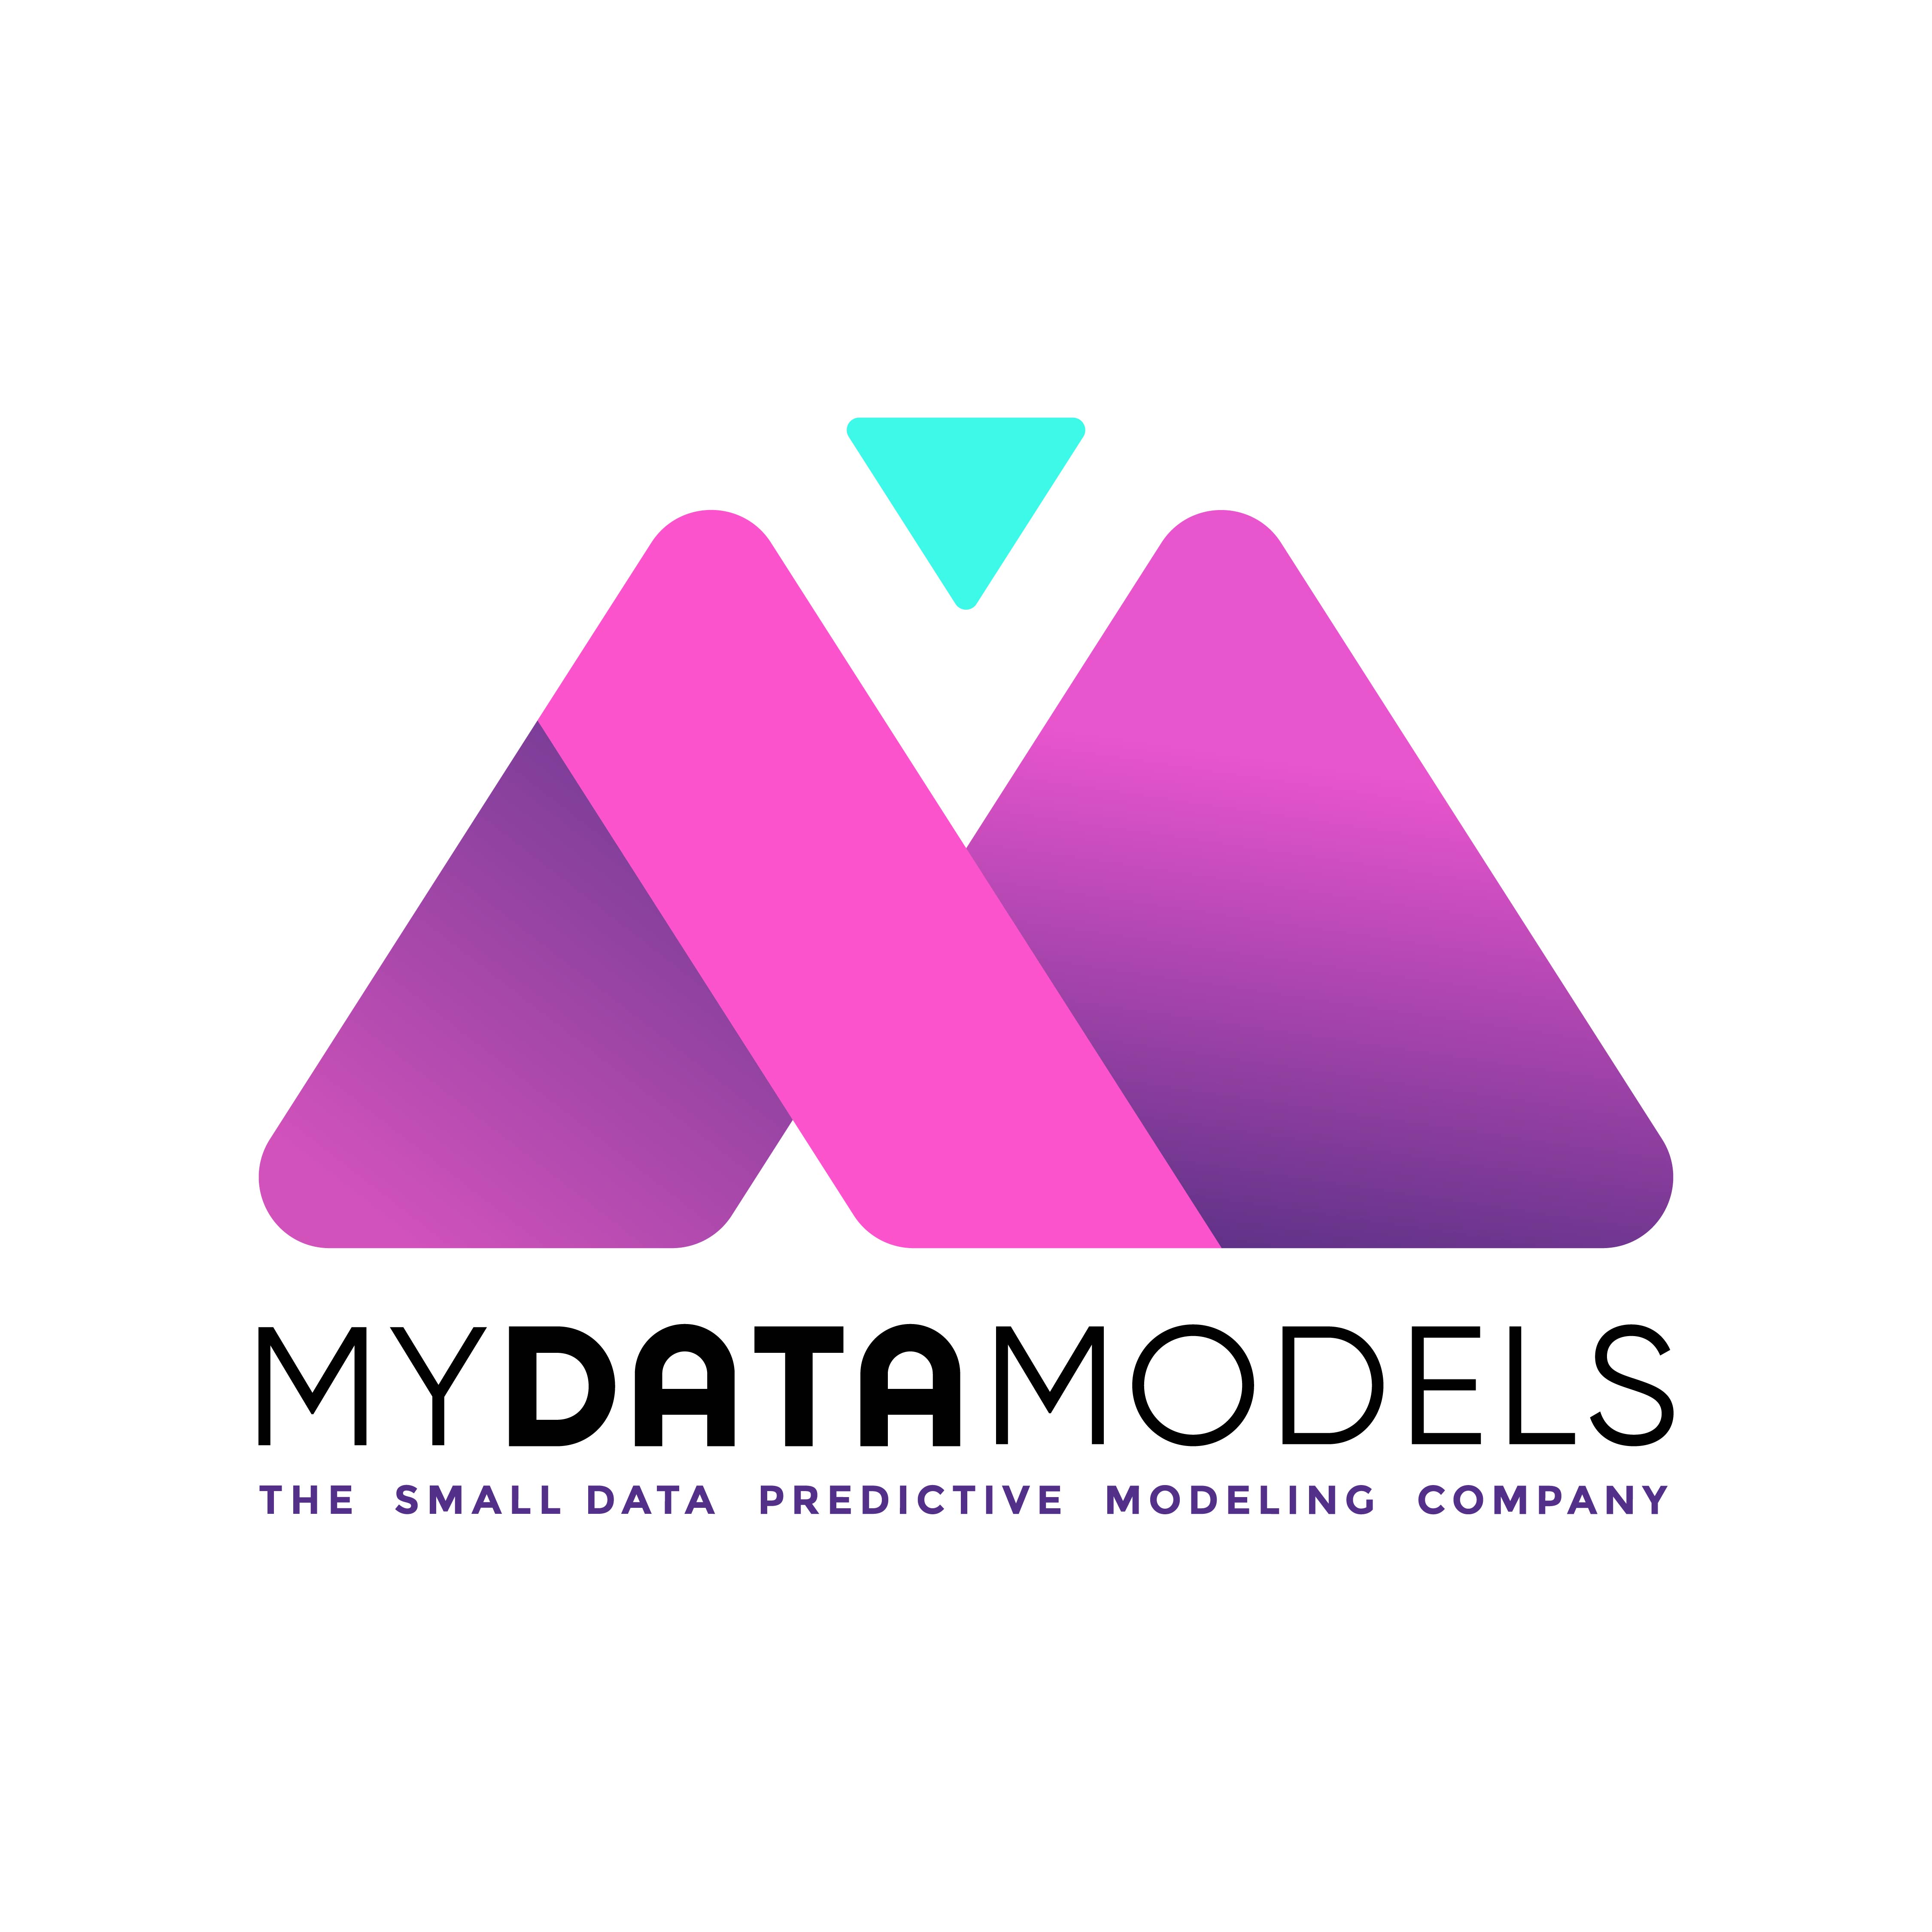 MyDataModels